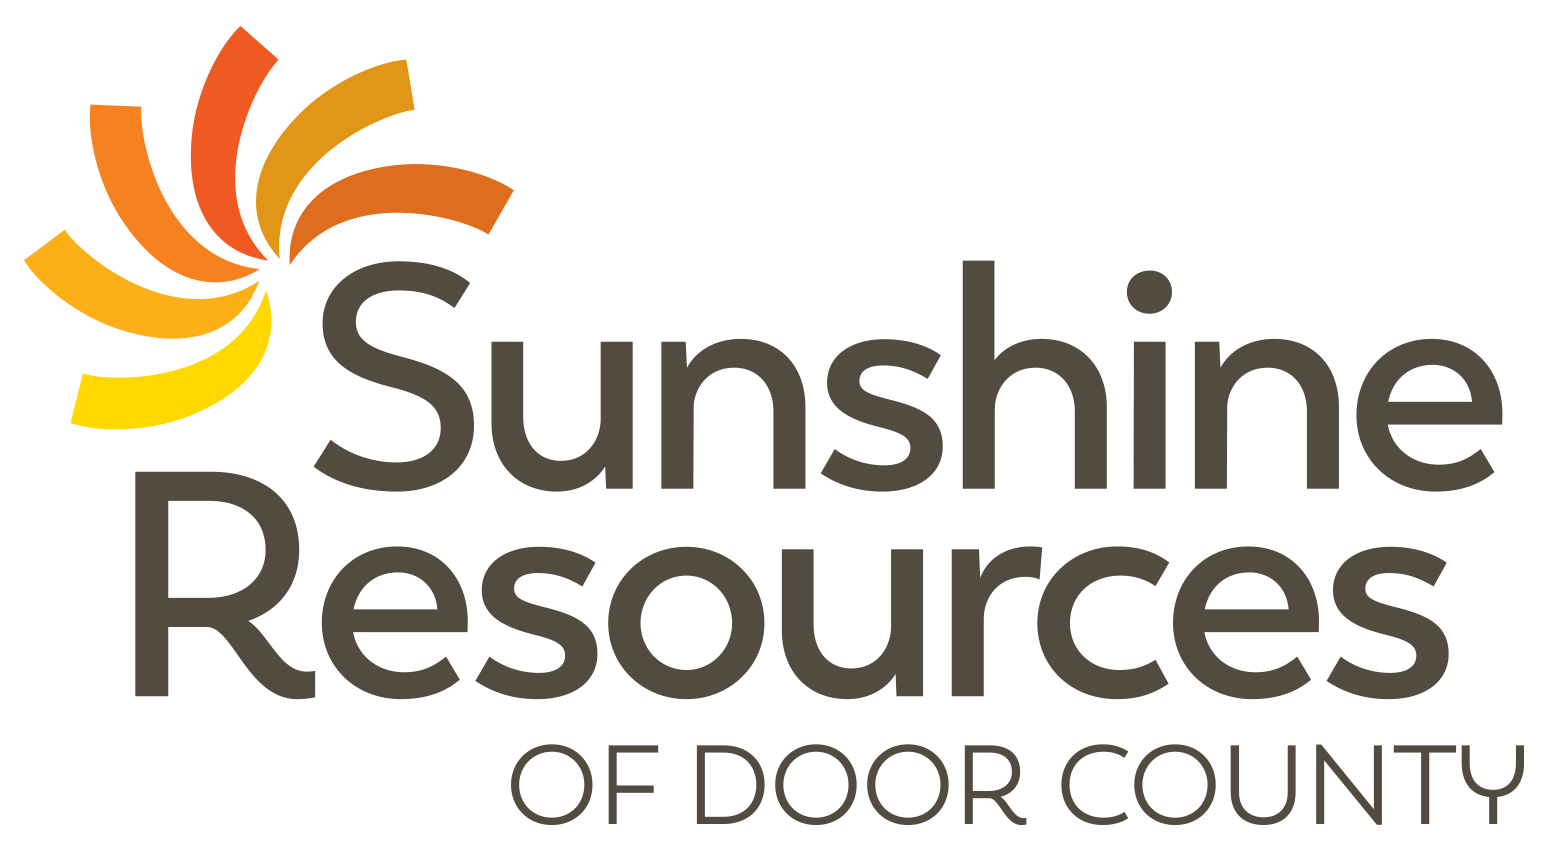 Sunshine Resources of Door County